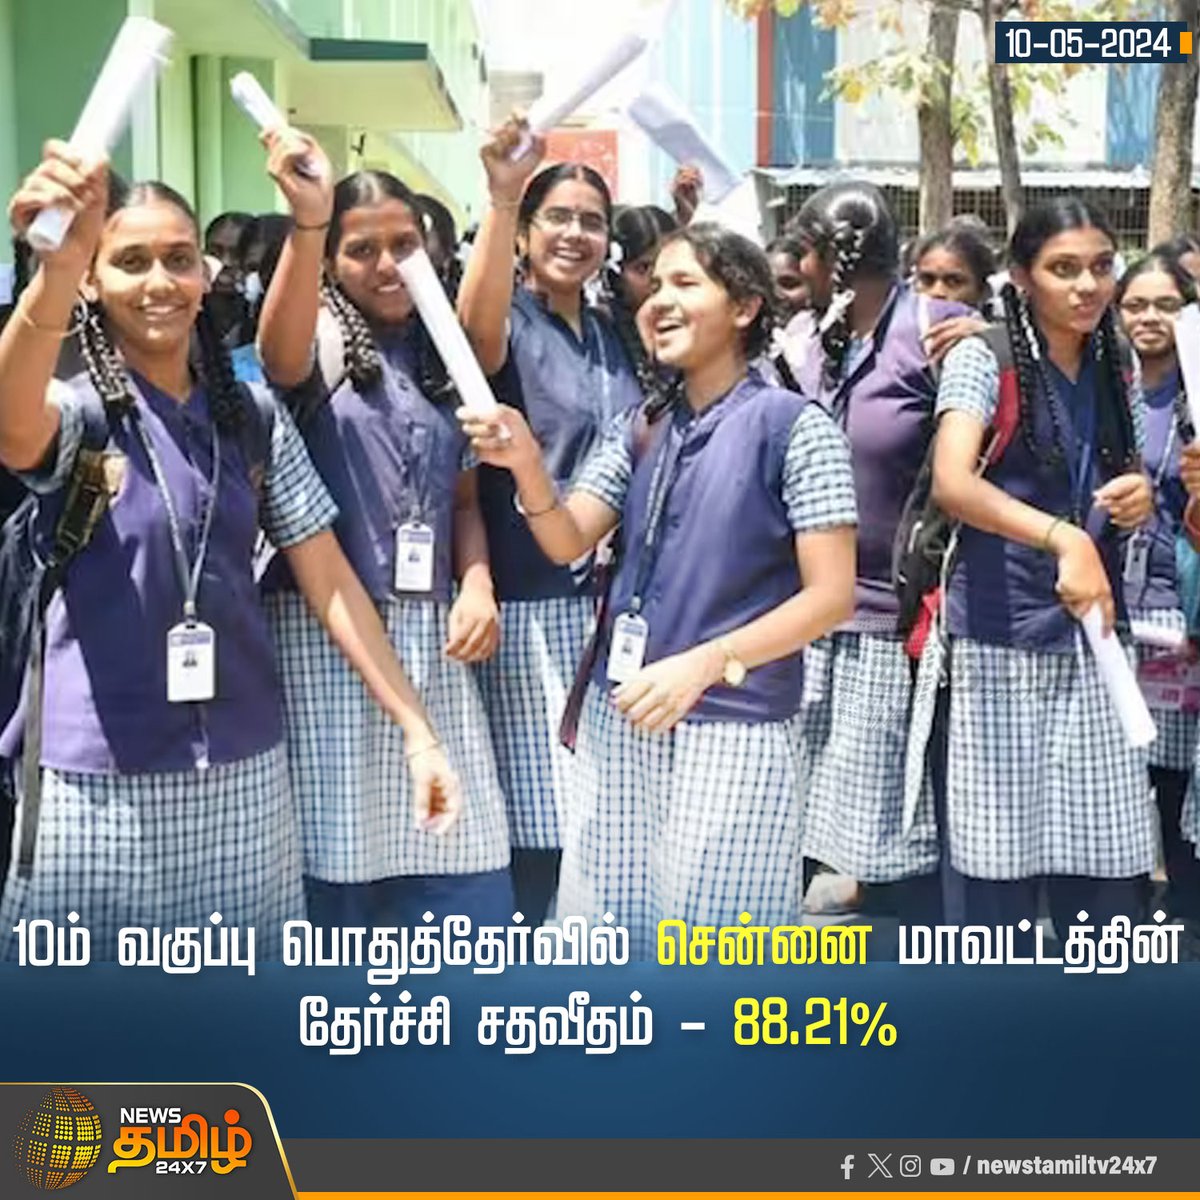 10ம் வகுப்பு பொதுத்தேர்வில் சென்னை மாவட்டத்தின் தேர்ச்சி சதவீதம் - 88.21%

Click Link: bit.ly/3TLWHxa

#NewsTamil24x7 | #10thResult | #SchoolStudents | #Tamilnadu | #GovtSchools | #PublicExamResults